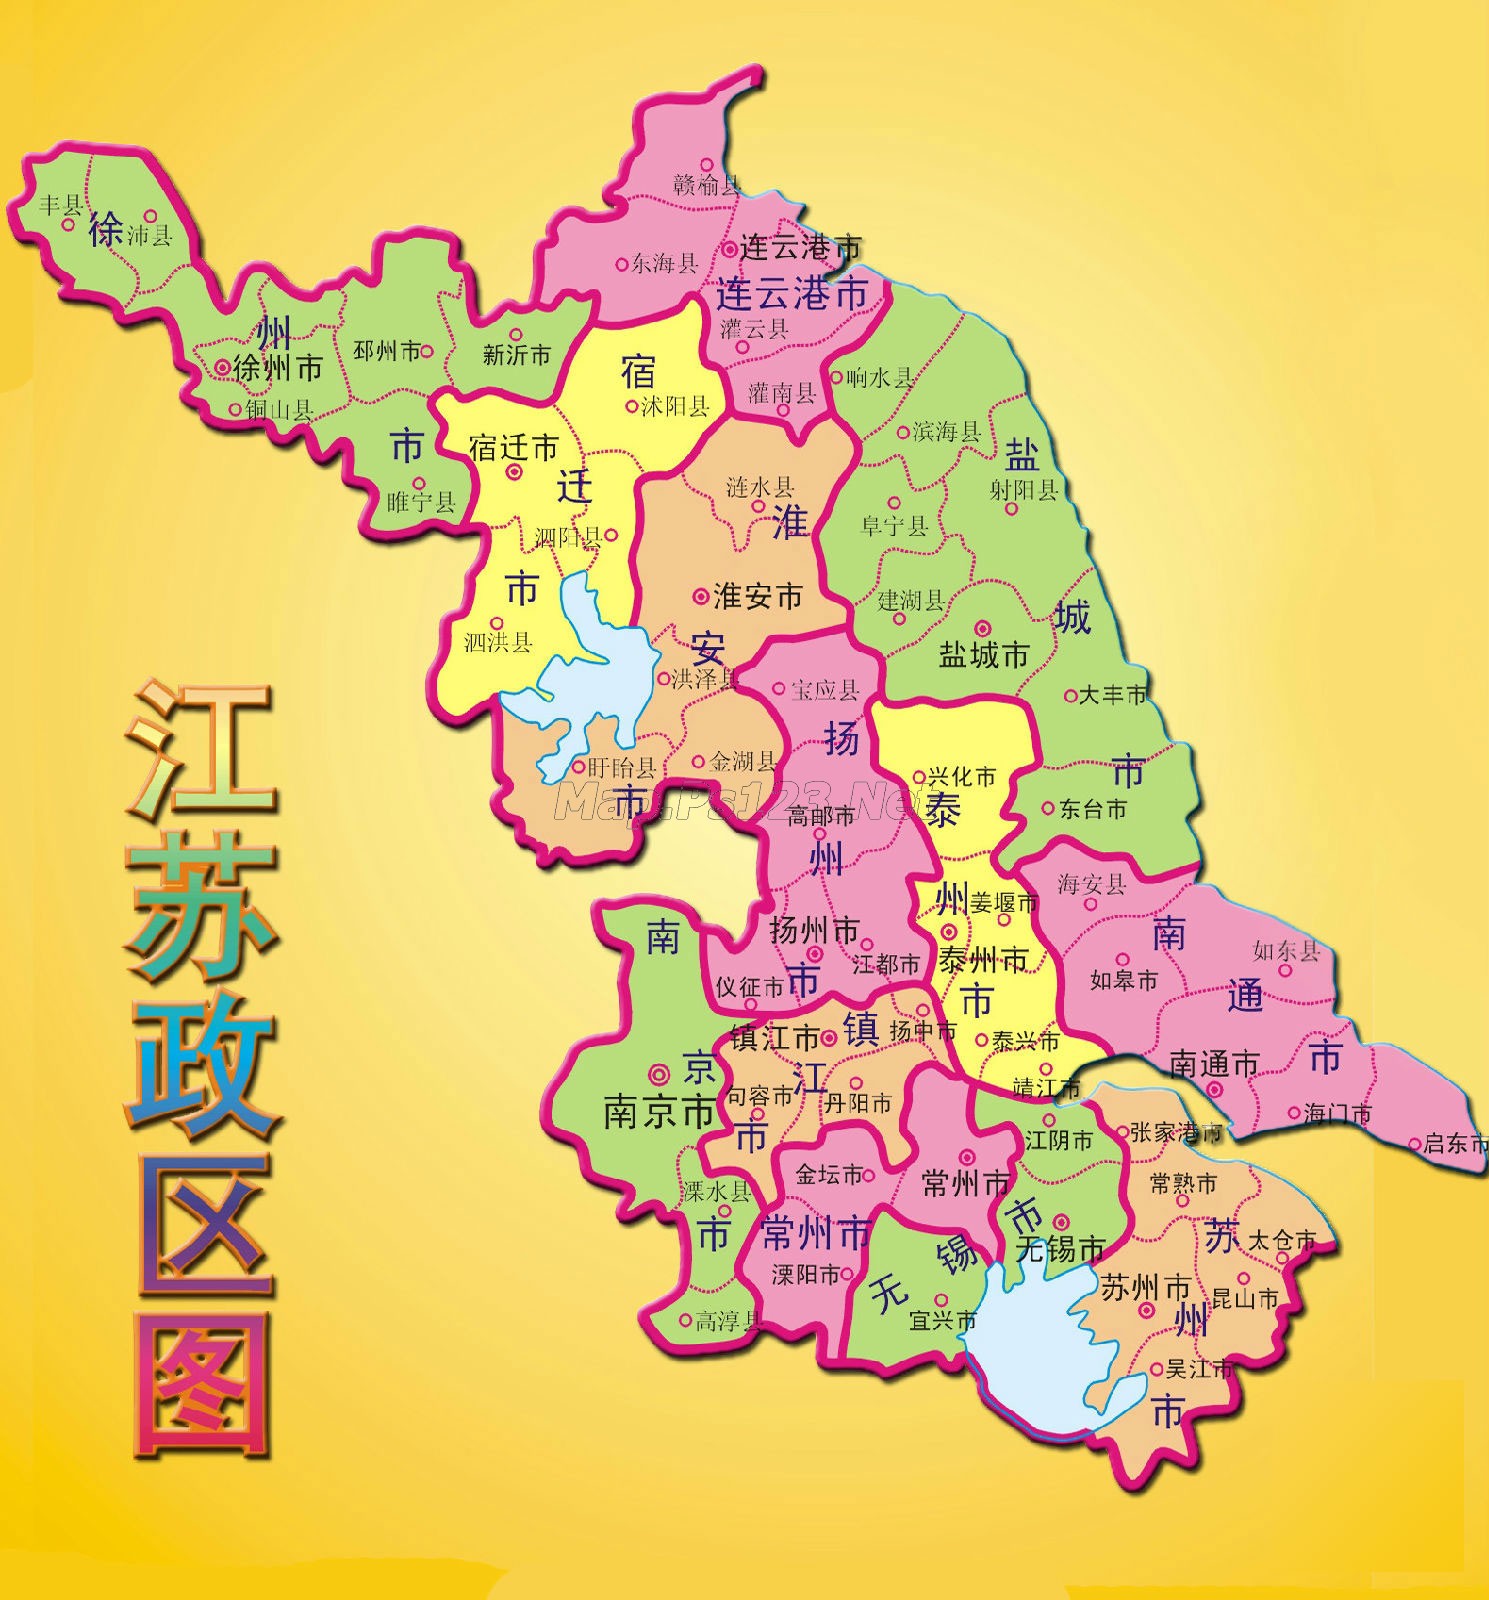 江苏省有多少个市，安徽省有多少个市